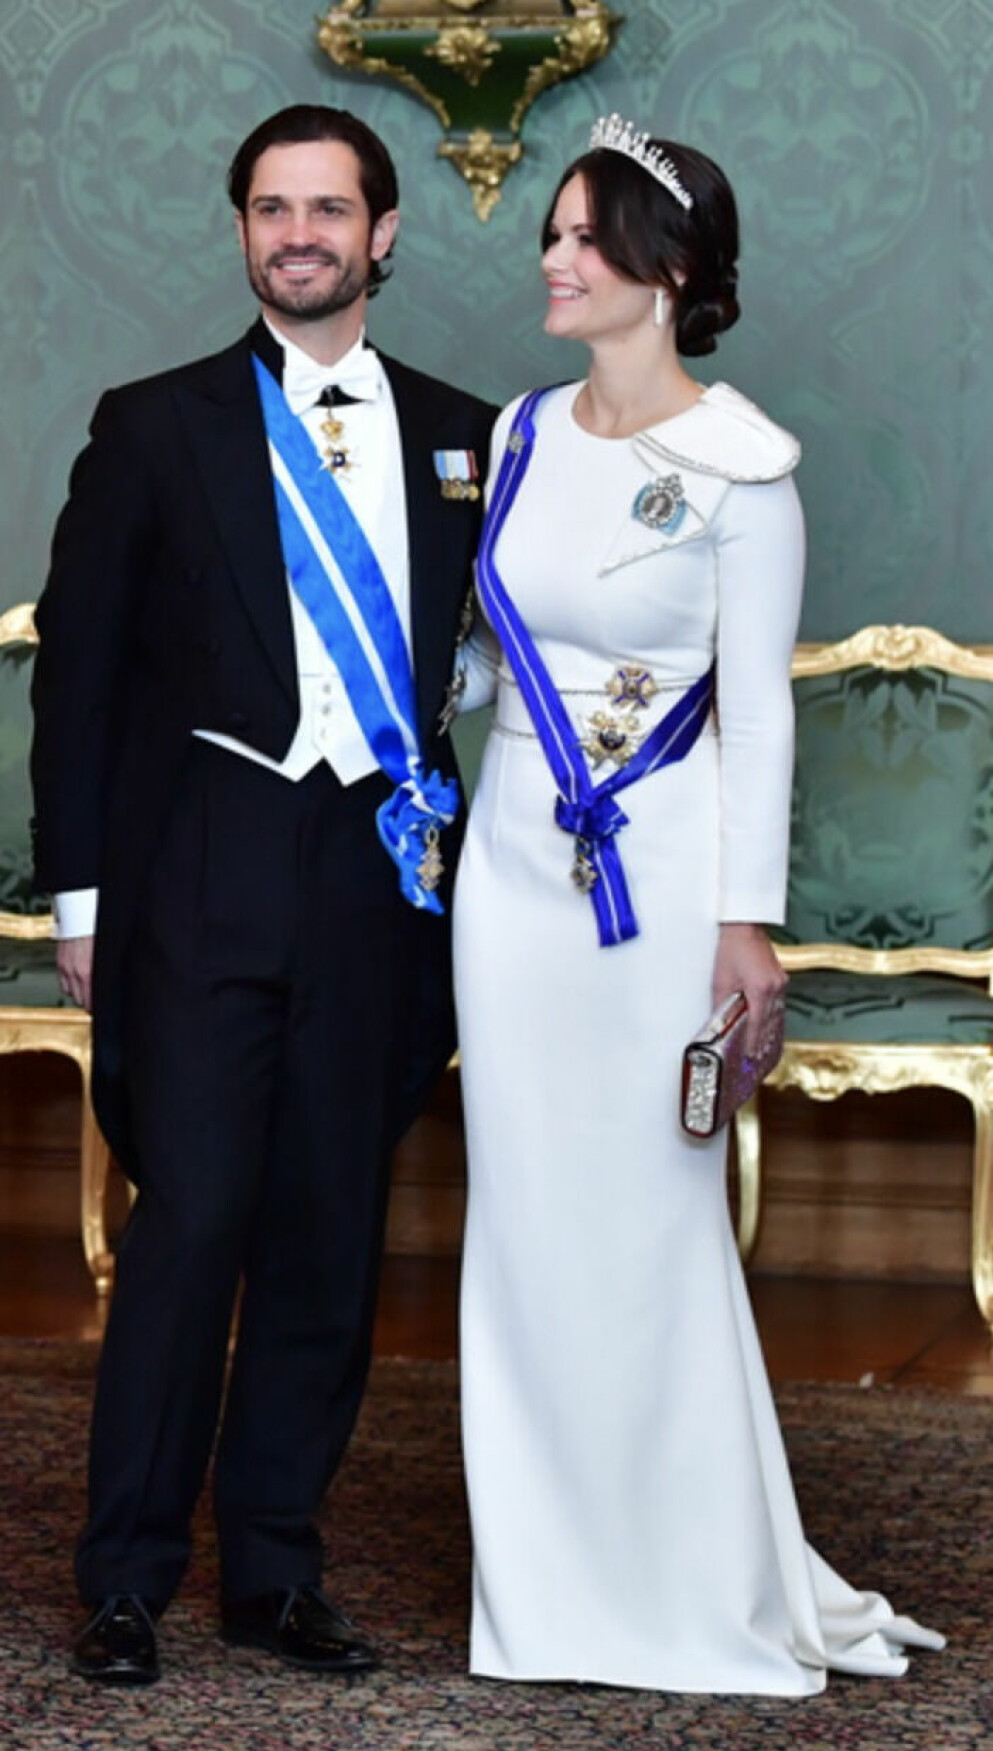 prins Carl Philip och prinsessan Sofia vid en bankett på Stockholms slott i samband med det spanska statsbesöket